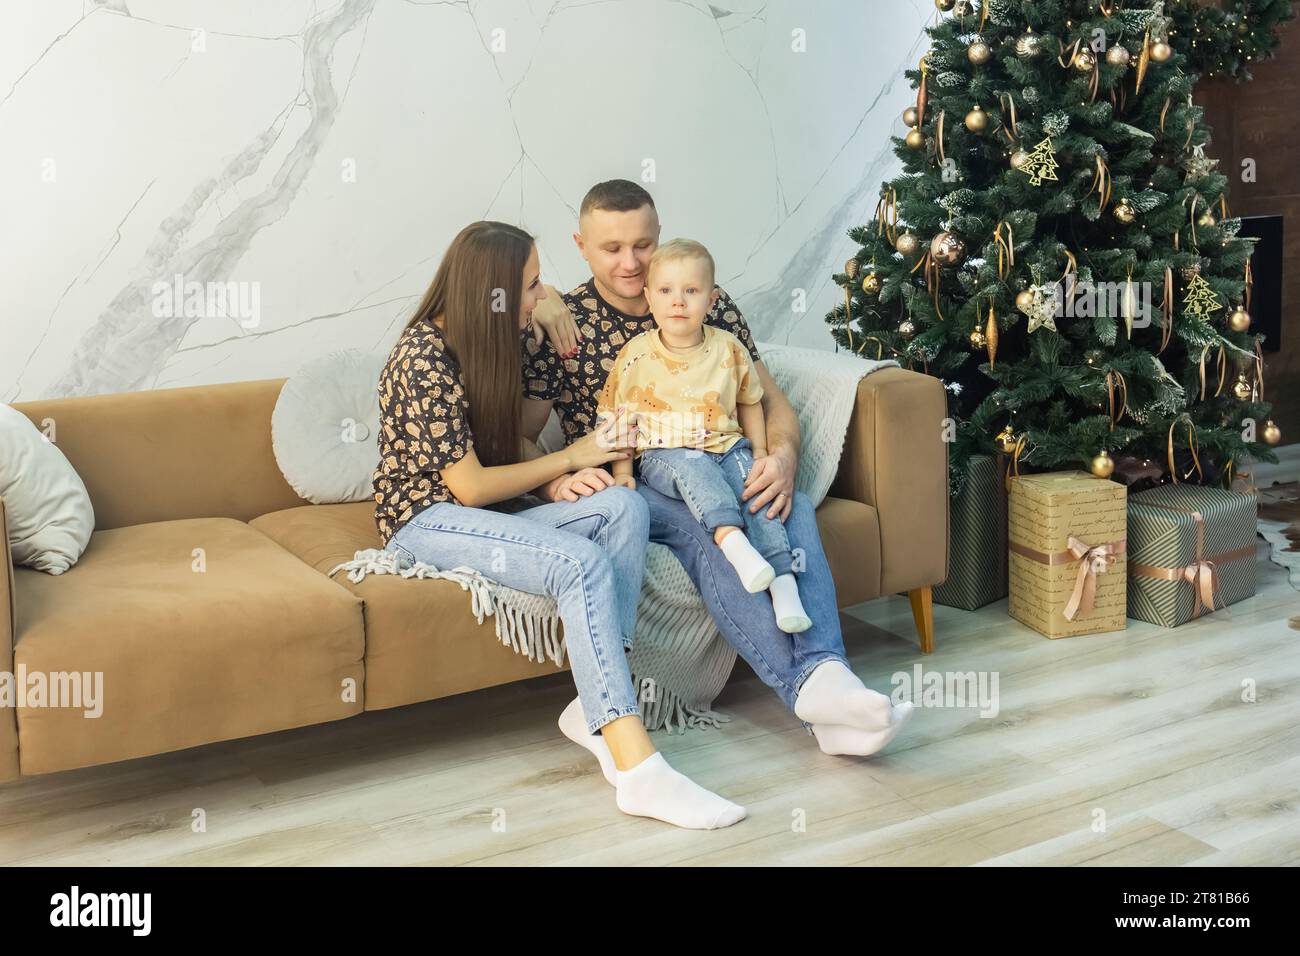 Wunderschöne Familie, die auf dem Sofa im Wohnzimmer sitzt, dekoriert für Weihnachten und Neujahr. Junge Familie in der Nähe eines schönen und großen Neujahrsbaums Stockfoto